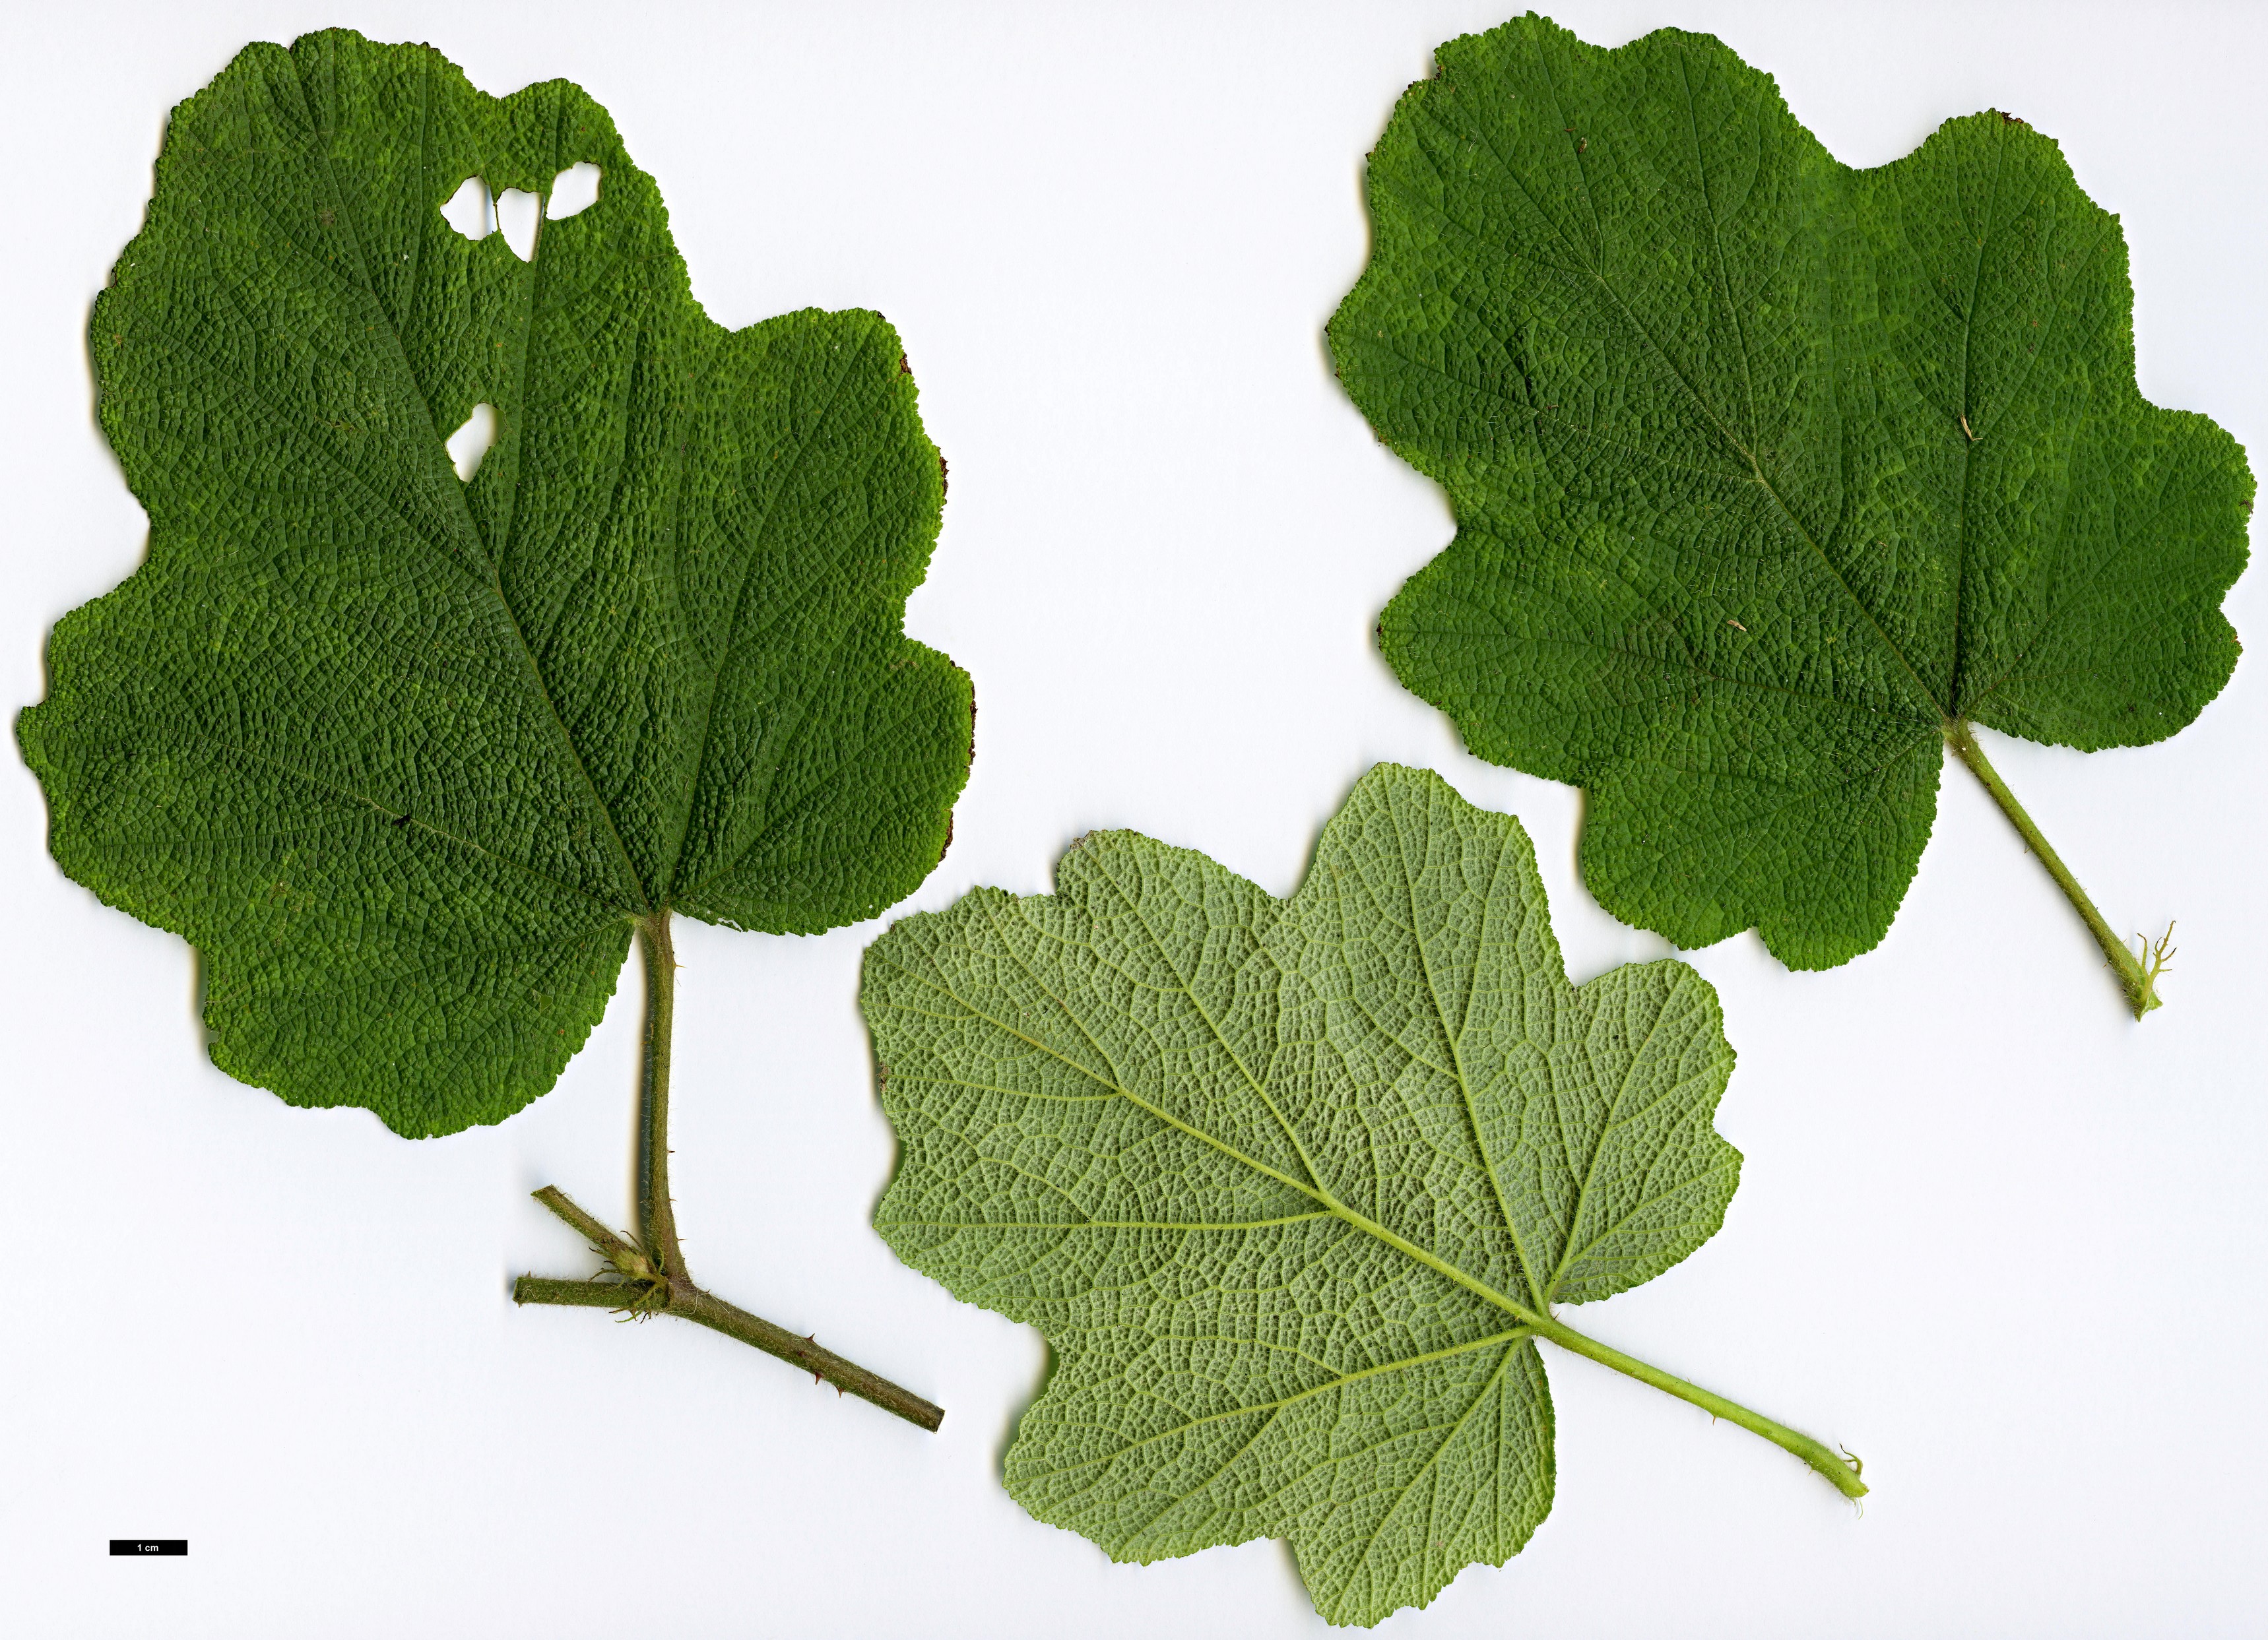 High resolution image: Family: Rosaceae - Genus: Rubus - Taxon: alceifolius